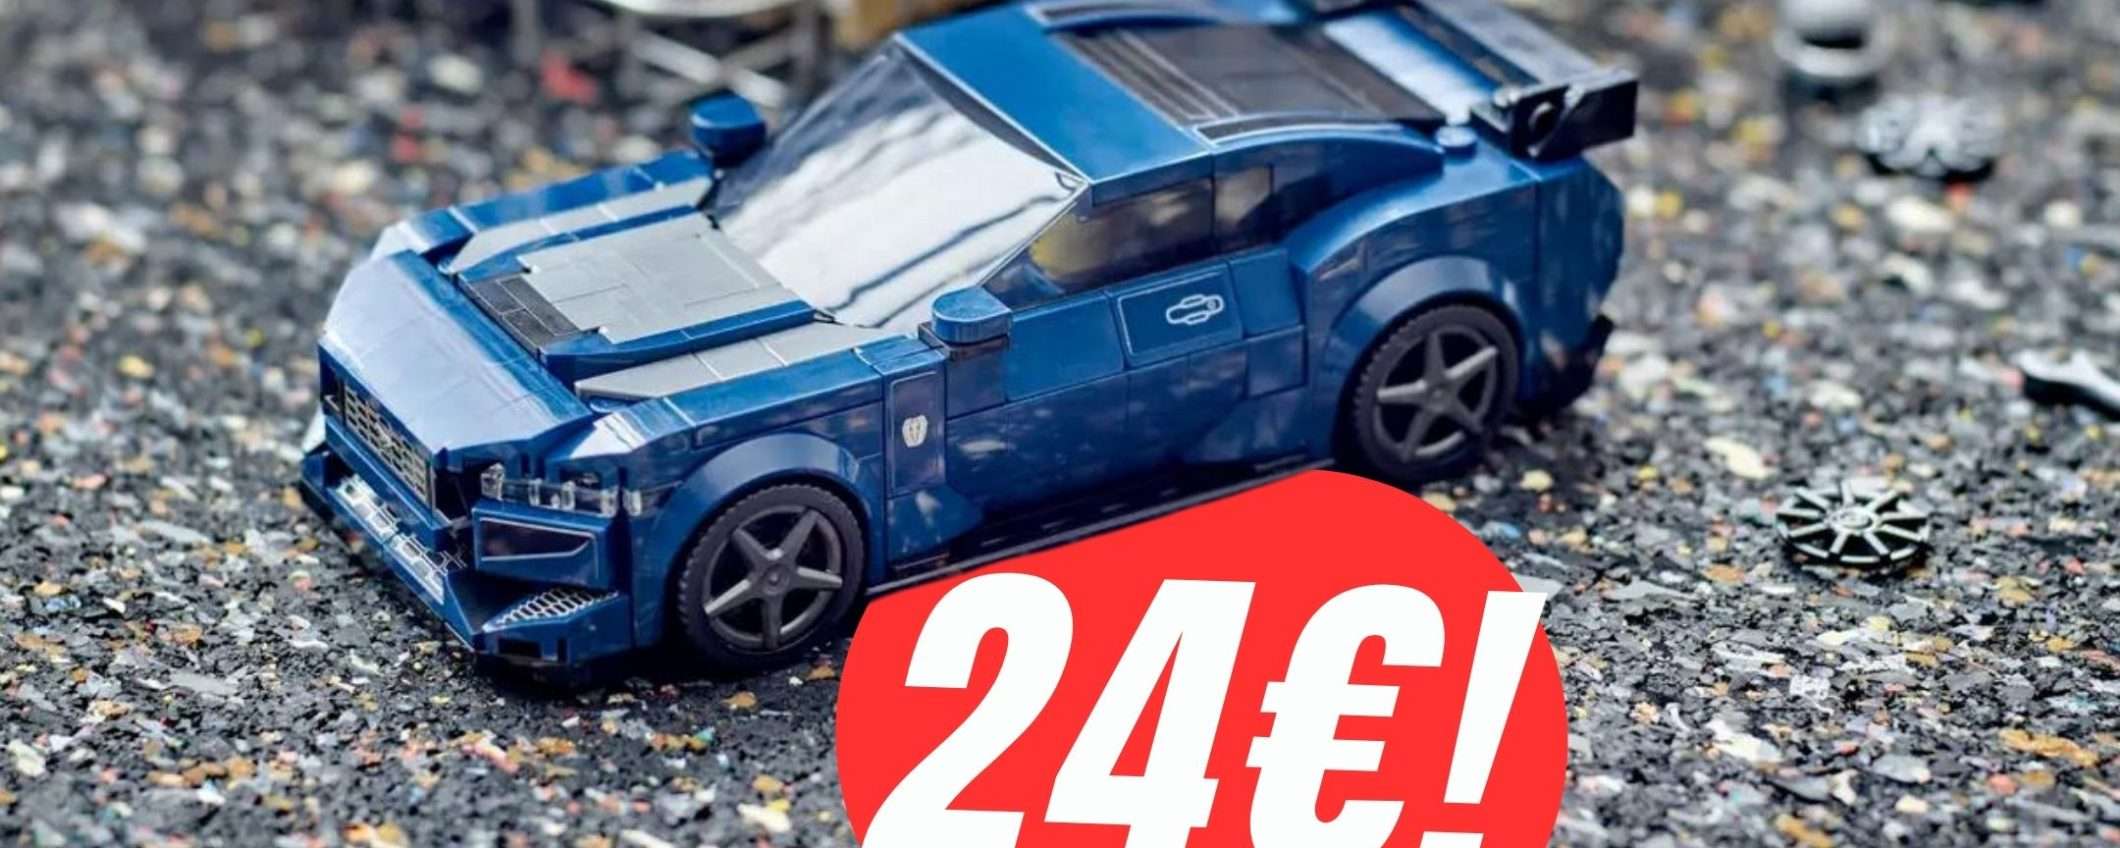 La Ford Mustang LEGO costa pochissimo con questo COUPON!